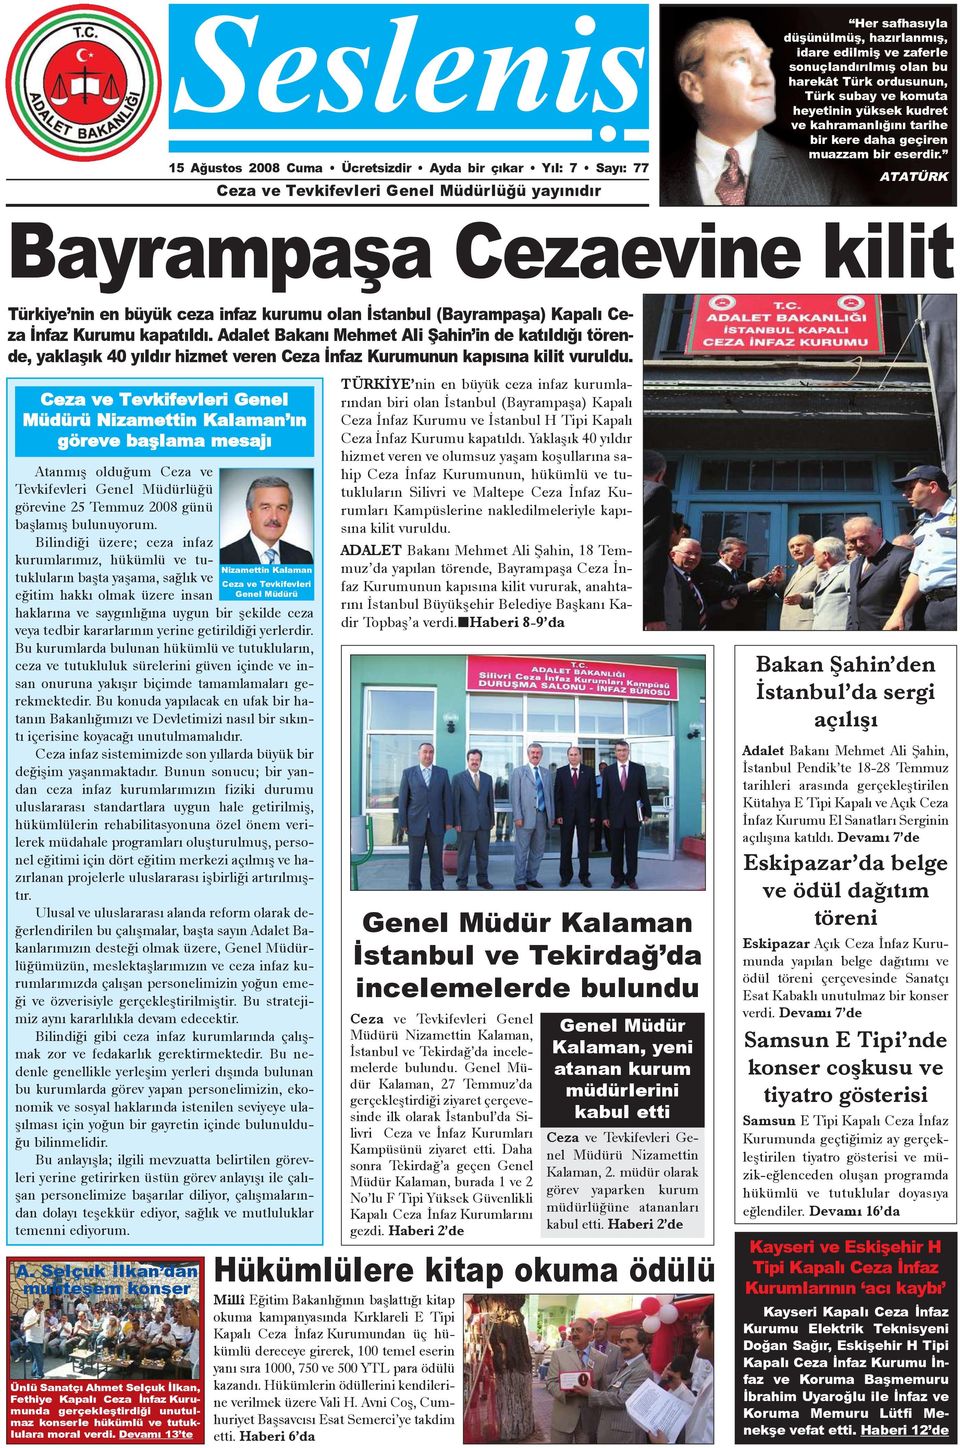 ATATÜRK Bayrampaþa Cezaevine kilit Türkiye nin en büyük ceza infaz kurumu olan Ýstanbul (Bayrampaþa) Kapalý Ceza Ýnfaz Kurumu kapatýldý.